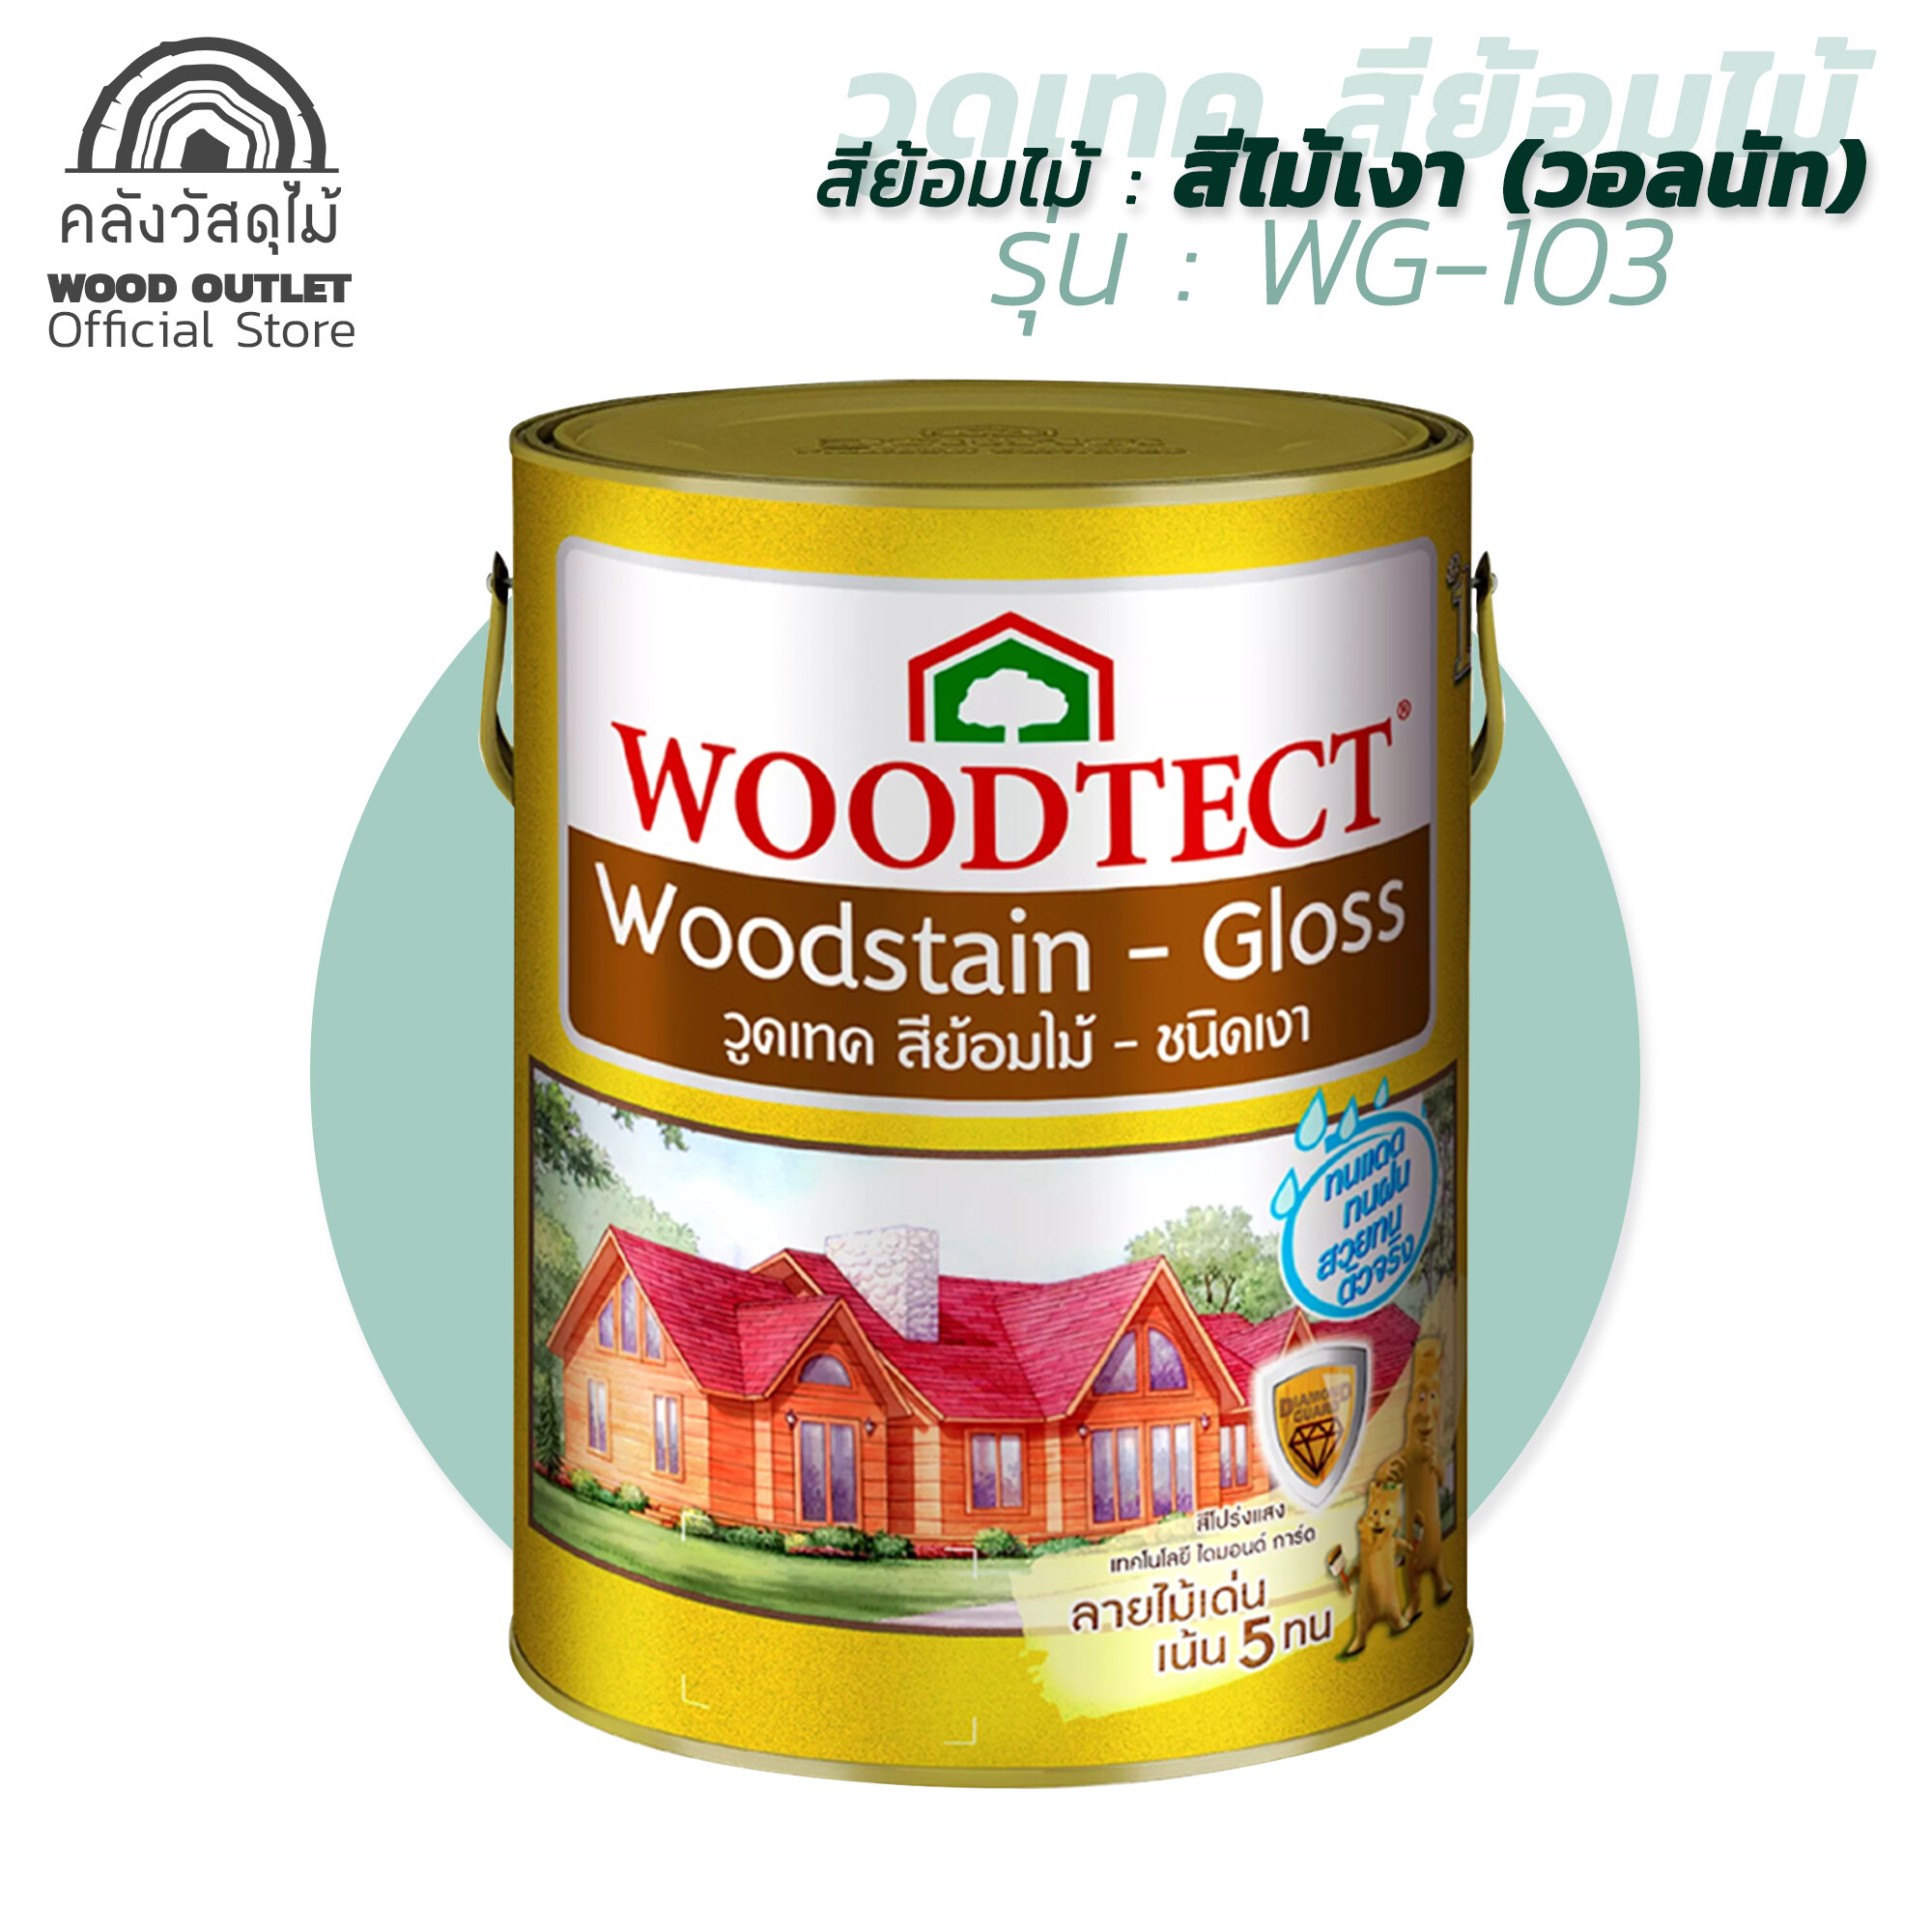 WOOD OUTLET (คลังวัสดุไม้) สีย้อมไม้ วูดเทค สีไม้วอลนัทเงา WG-103 ขนาด 3.785 ลิตร สีย้อมไม้ สีทาบ้าน สีทาไม้